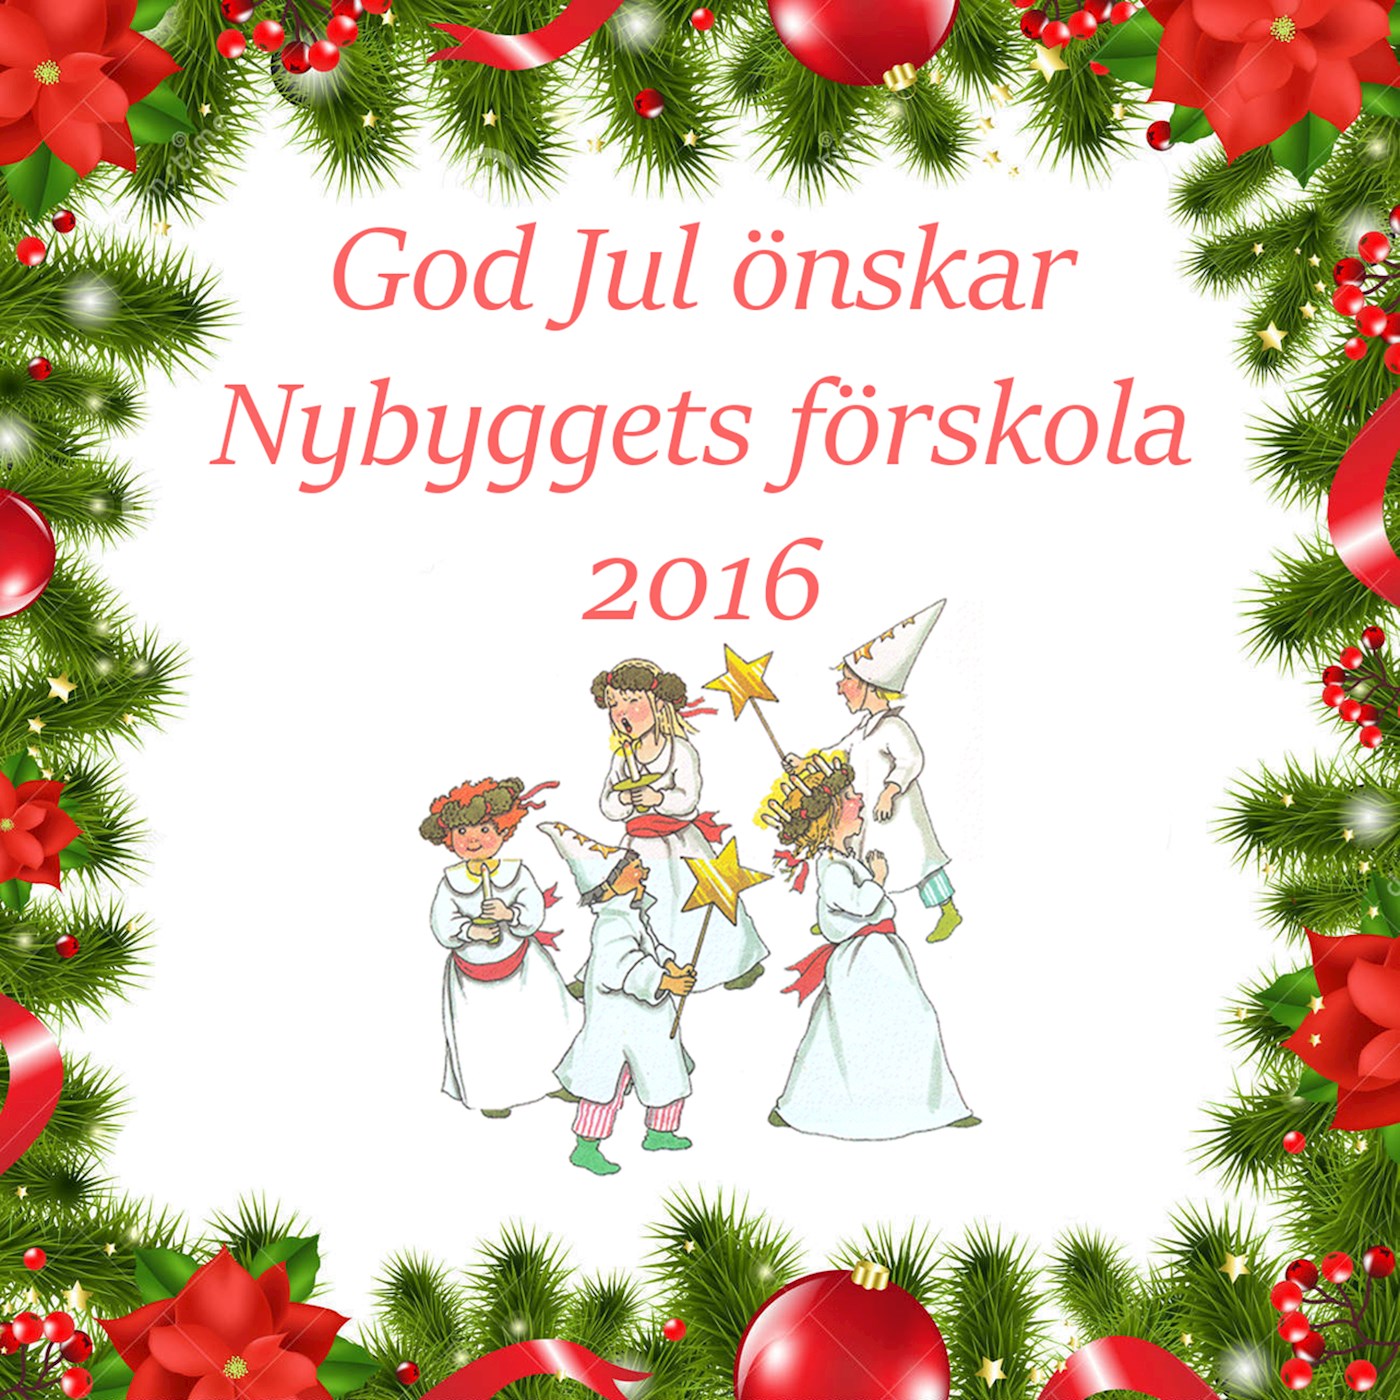 Nybyggets förskola önskar God Jul 2016